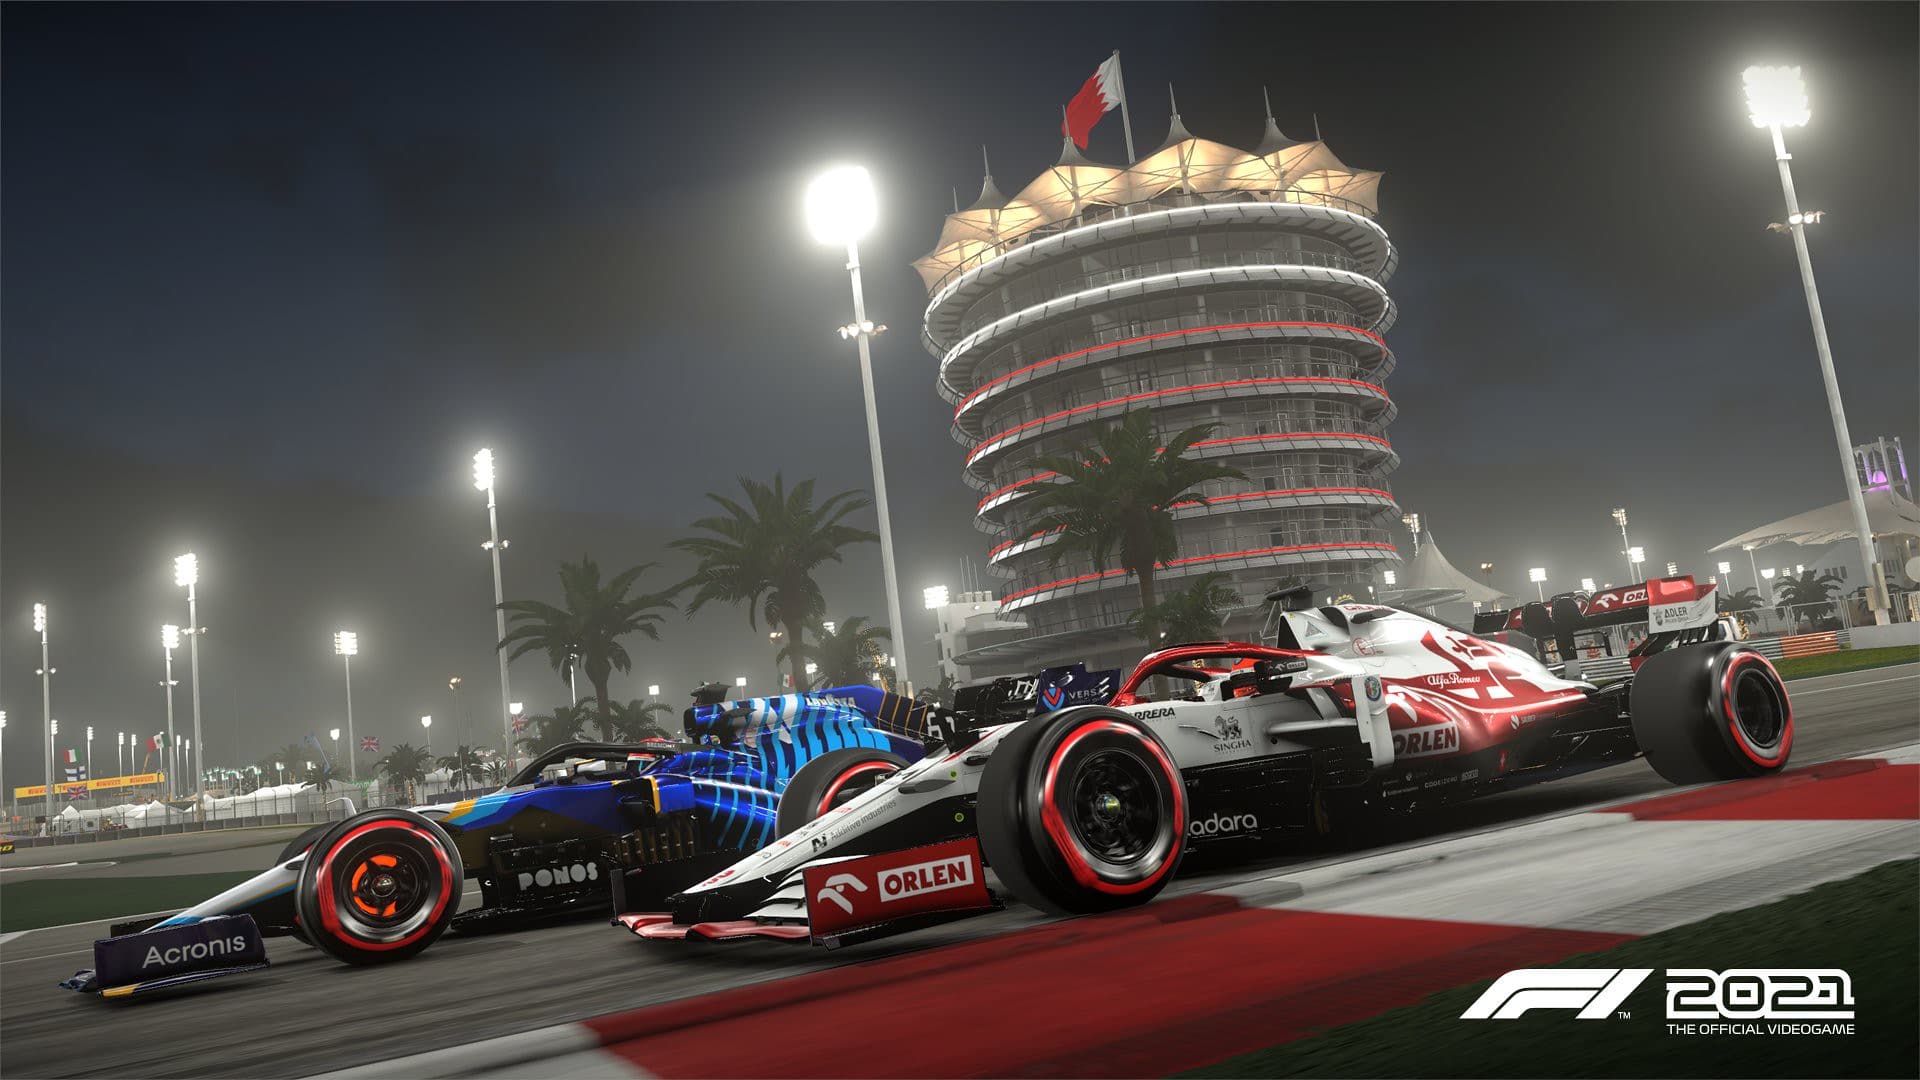 F1 2021 Update 1.13